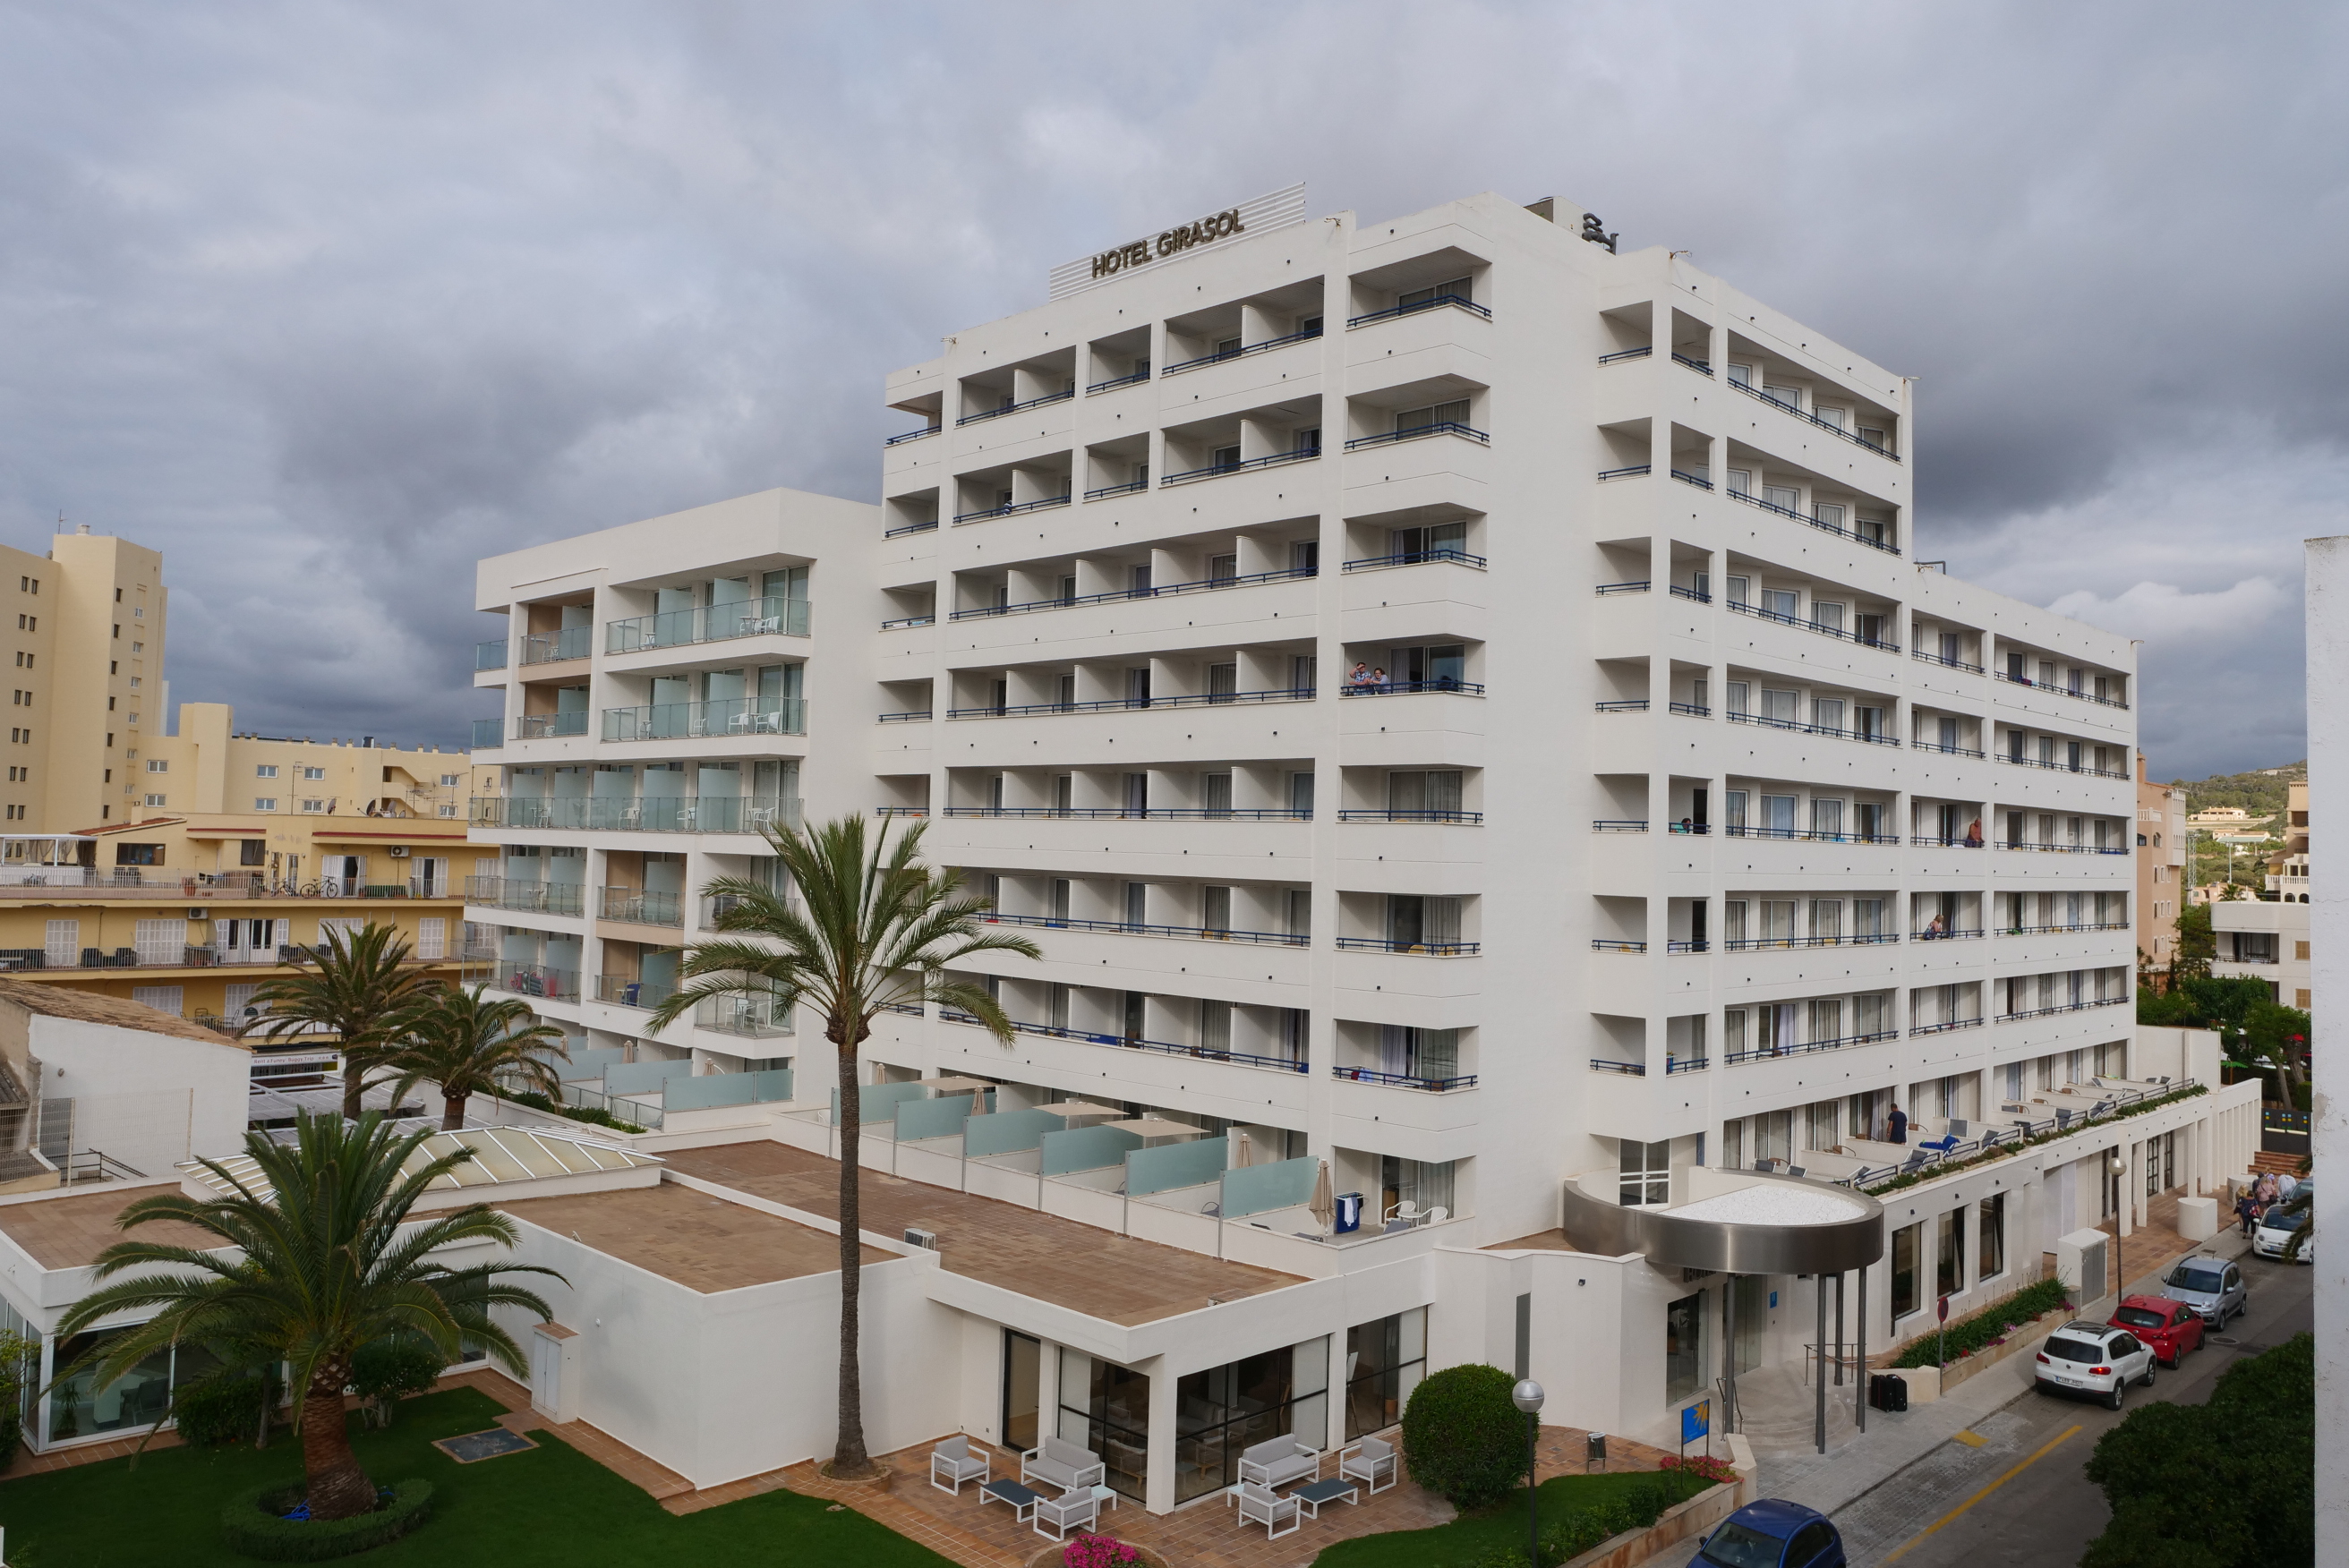 Hotel Girasol - Cala Millor, Majorca - On The Beach